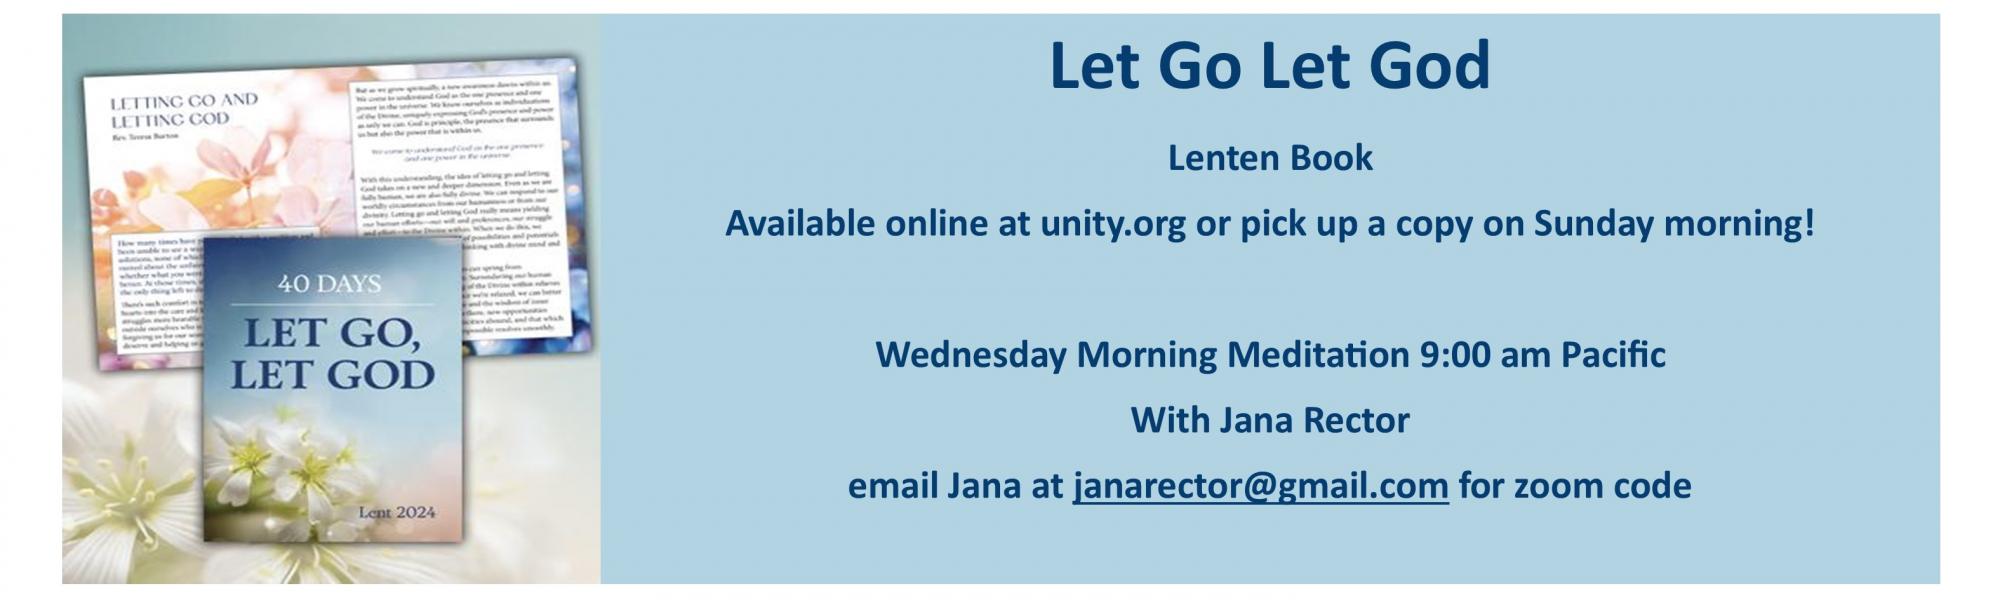 Let Go Let God - Wednesday Morning Meditation